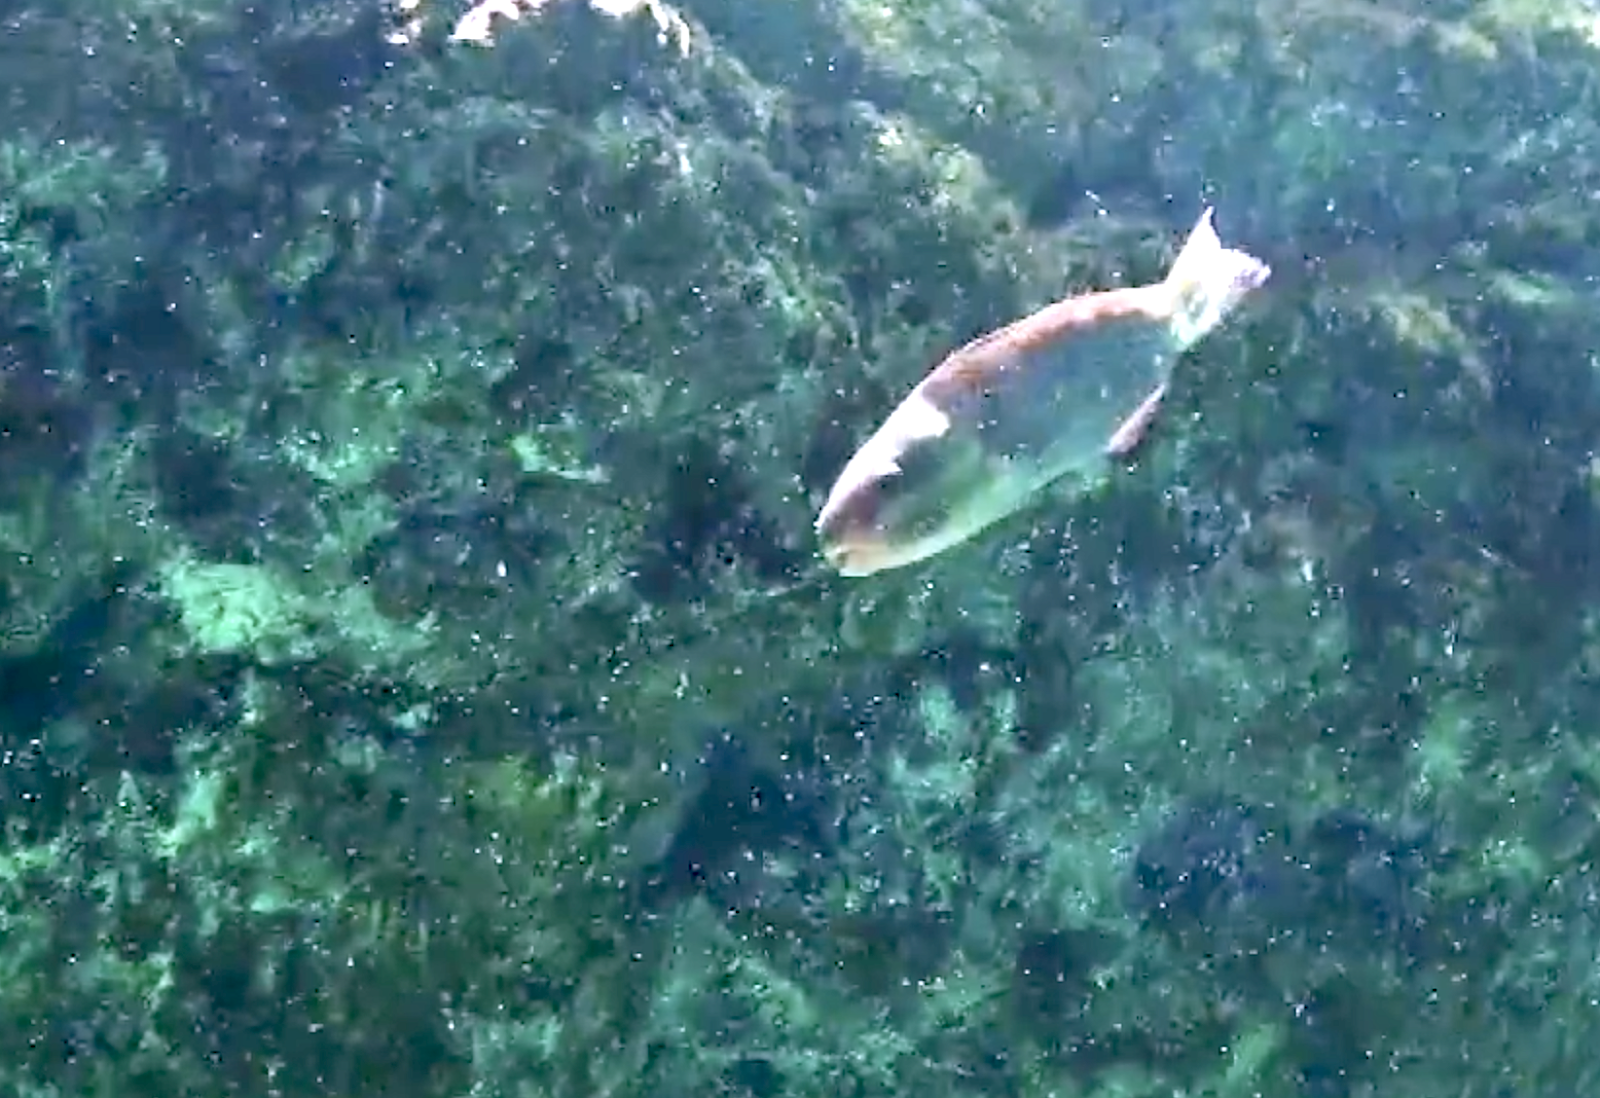 Aquarium Movies Japan Archive 生きている魚図鑑 ハゲブダイ Bullethead Parrotfish Chlorurus Sordidus